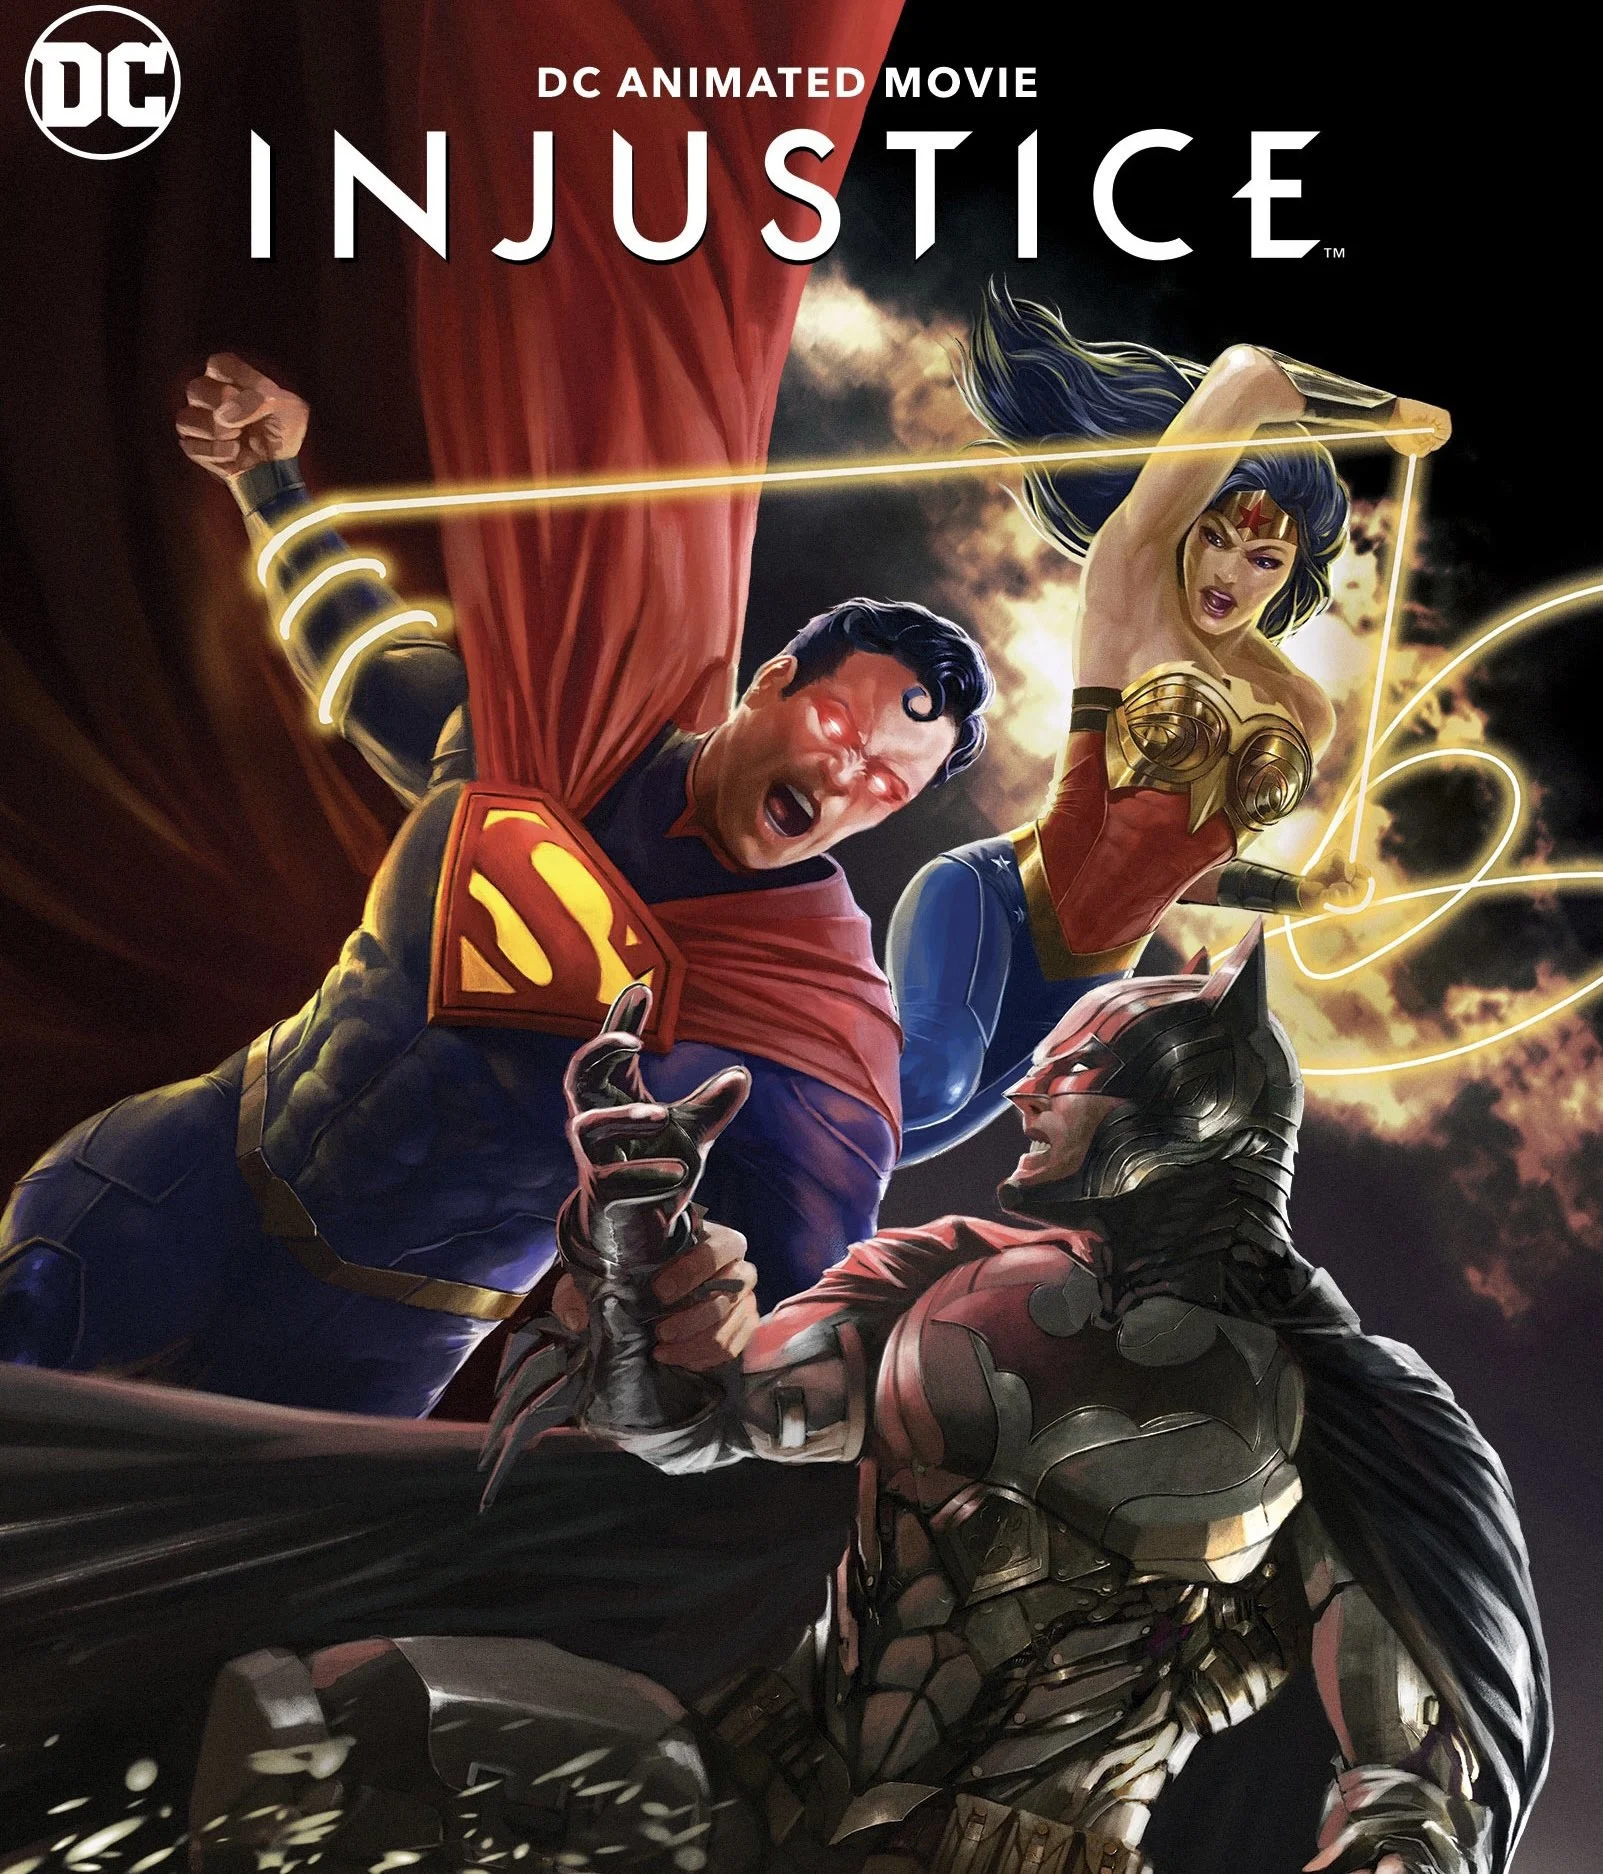 Анимационная адаптация Injustice выйдет 19 октября - фото 1